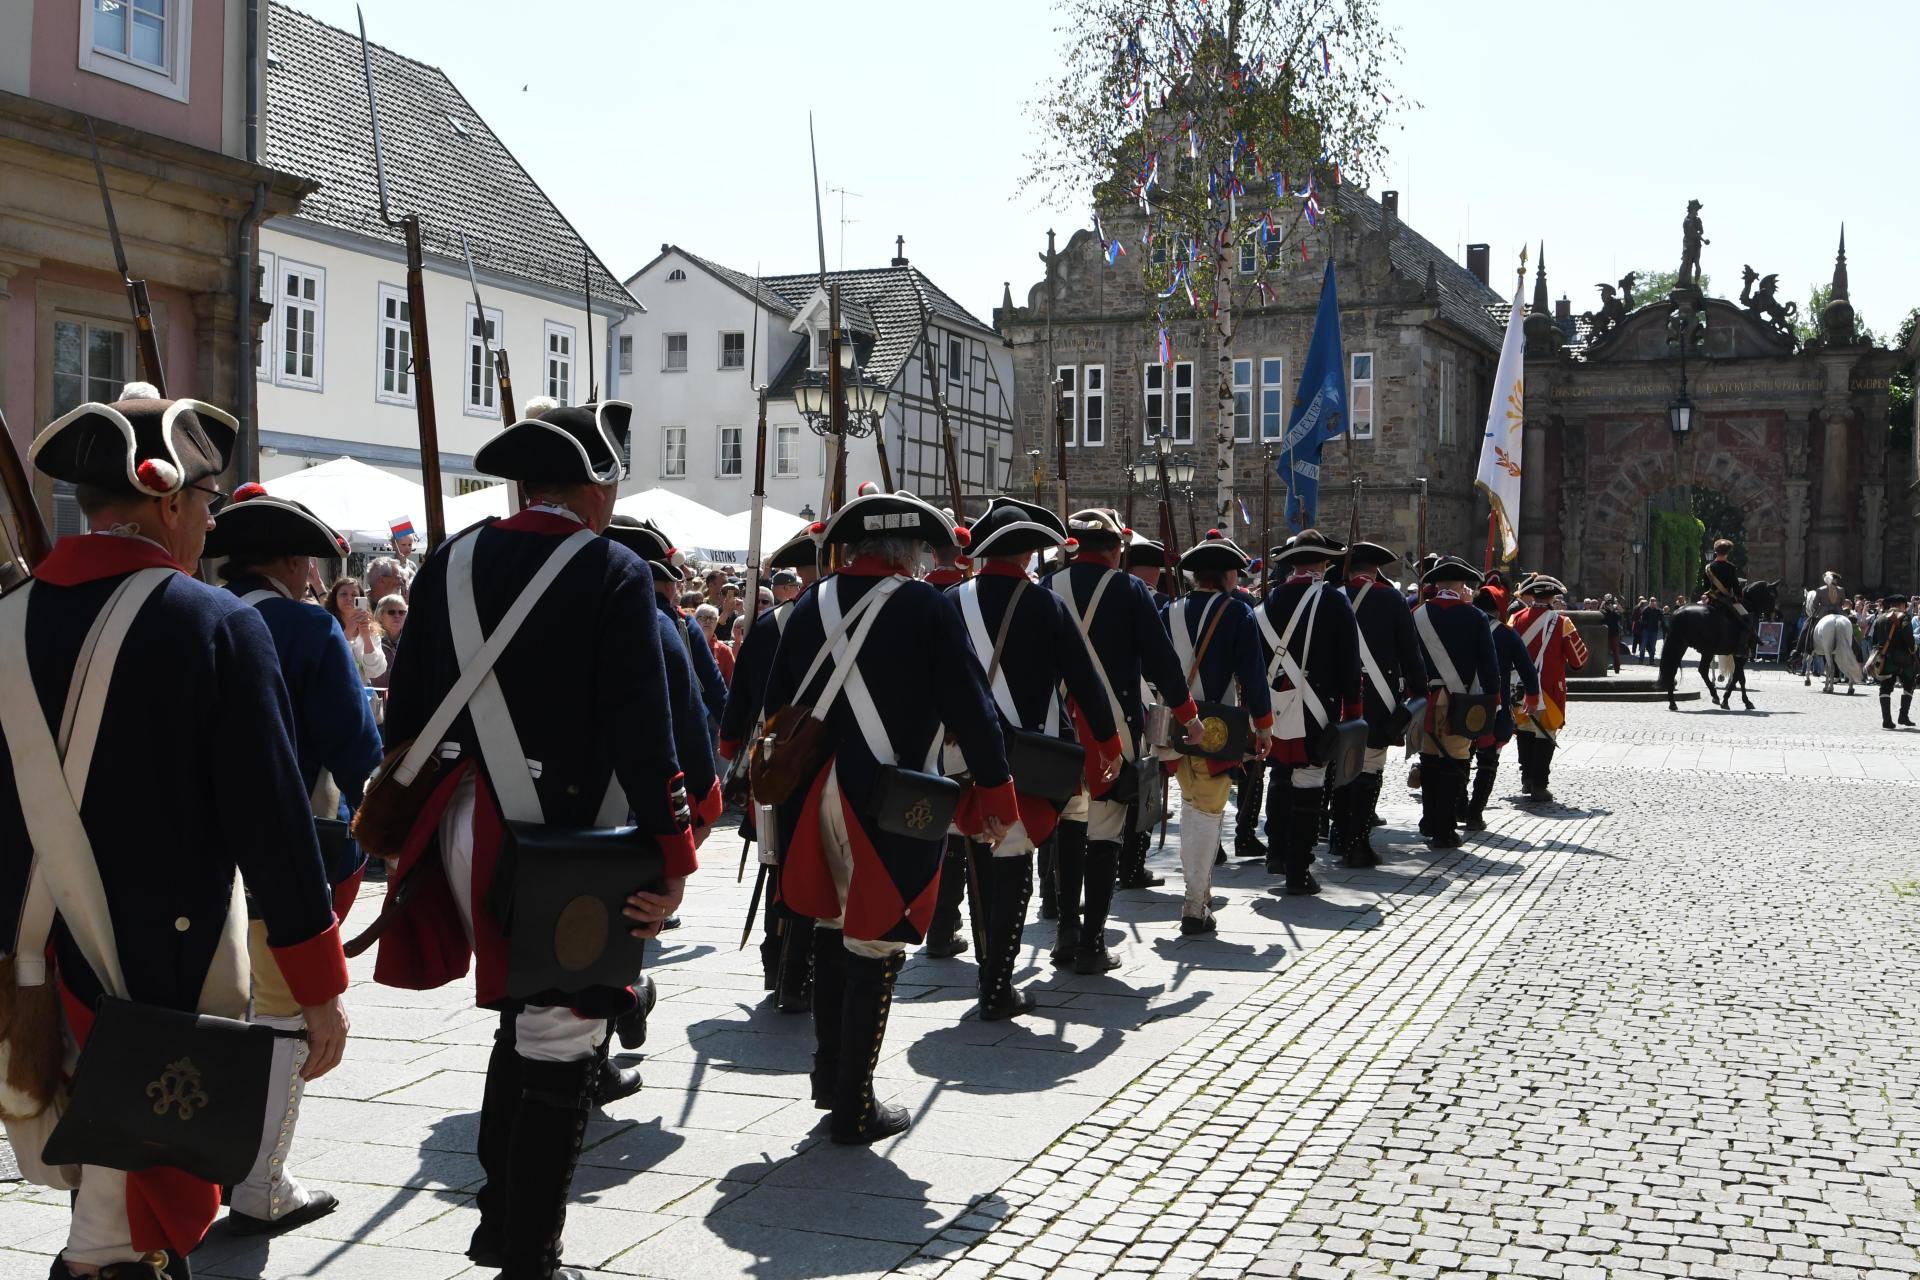 Die Stadt Bückeburg empfängt zum 300sten Geburtstag von Graf Wilhelm zu Schaumburg-Lippe ihren „Landesherren” mir einer großen Aktion in der Innenstadt. (Foto: nd)